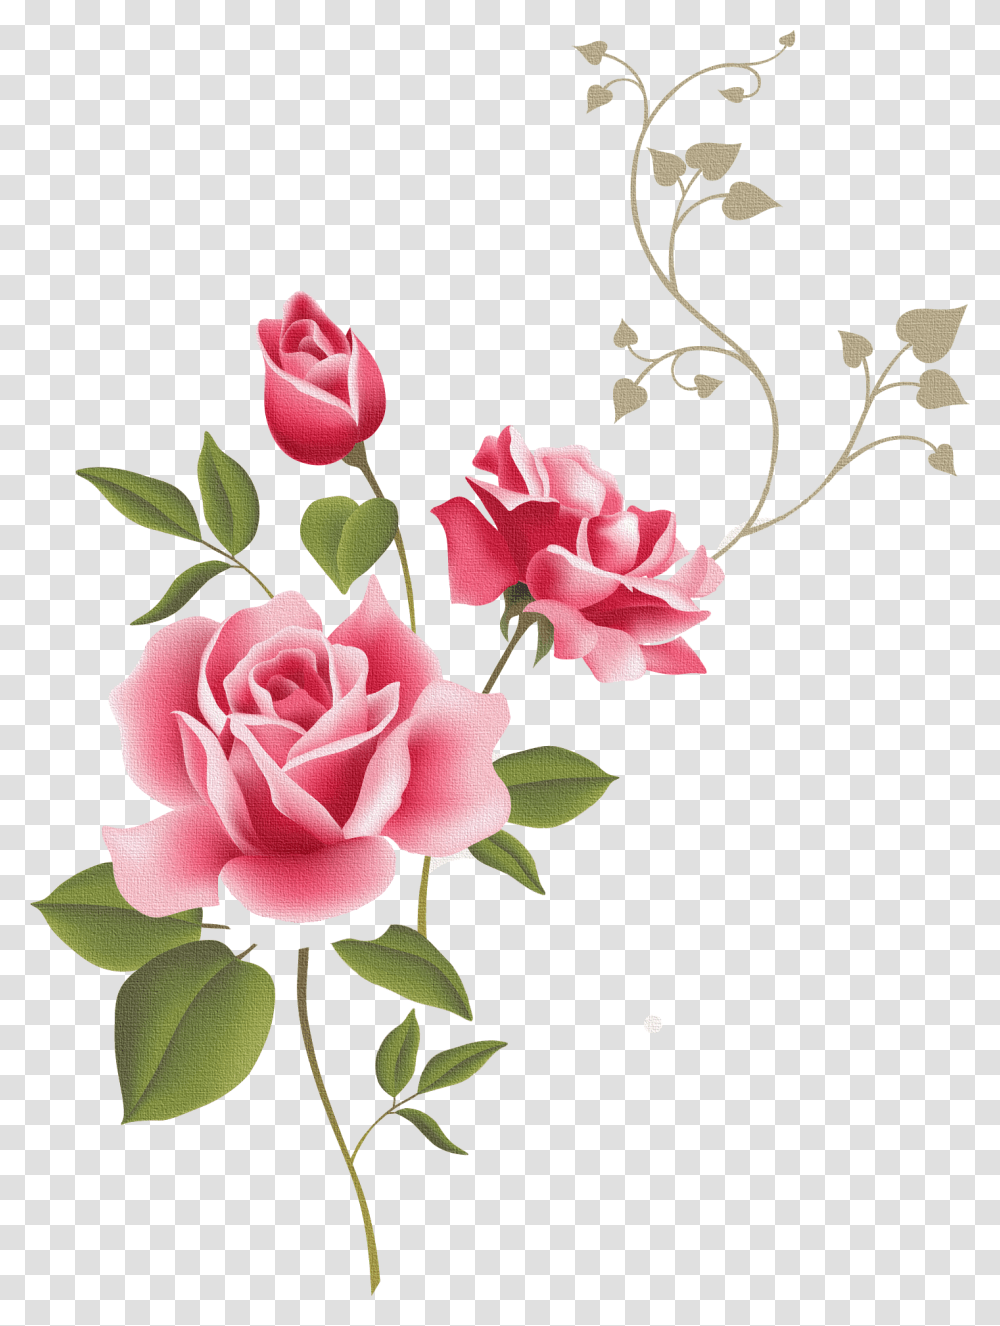 Rose Outline Clip Art Borders Flowers Rose, Floral Design, Pattern, Plant Transparent Png